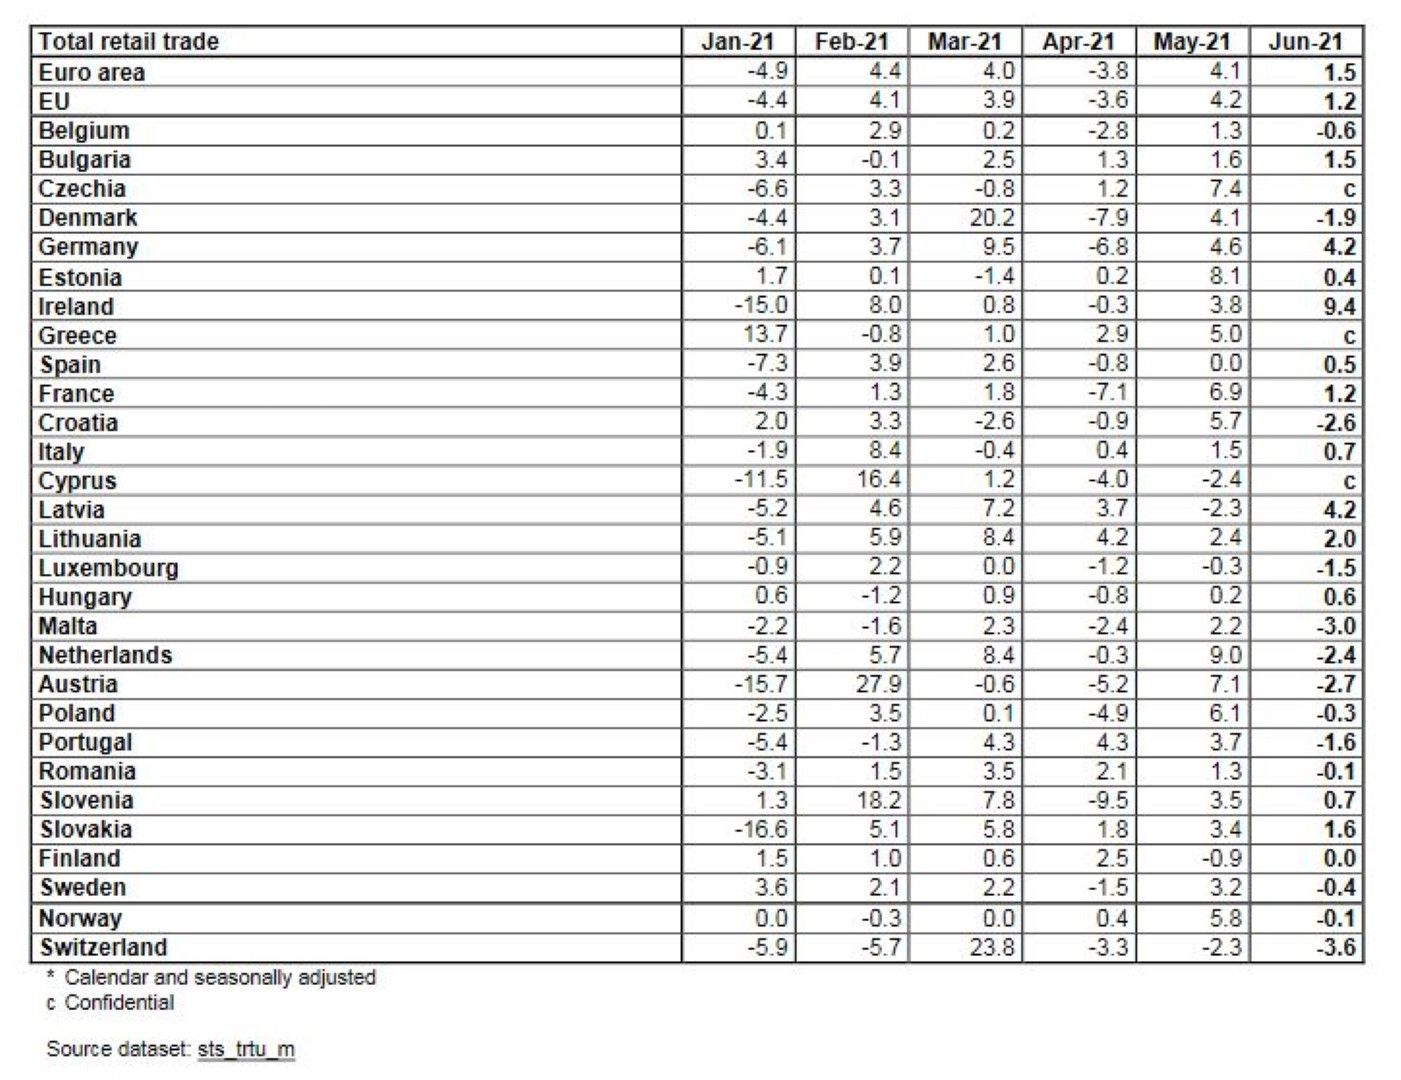 Търговия на дребно в ЕС и по страни през юни 2021 г., процентна промяна в сравнение с предходния месец